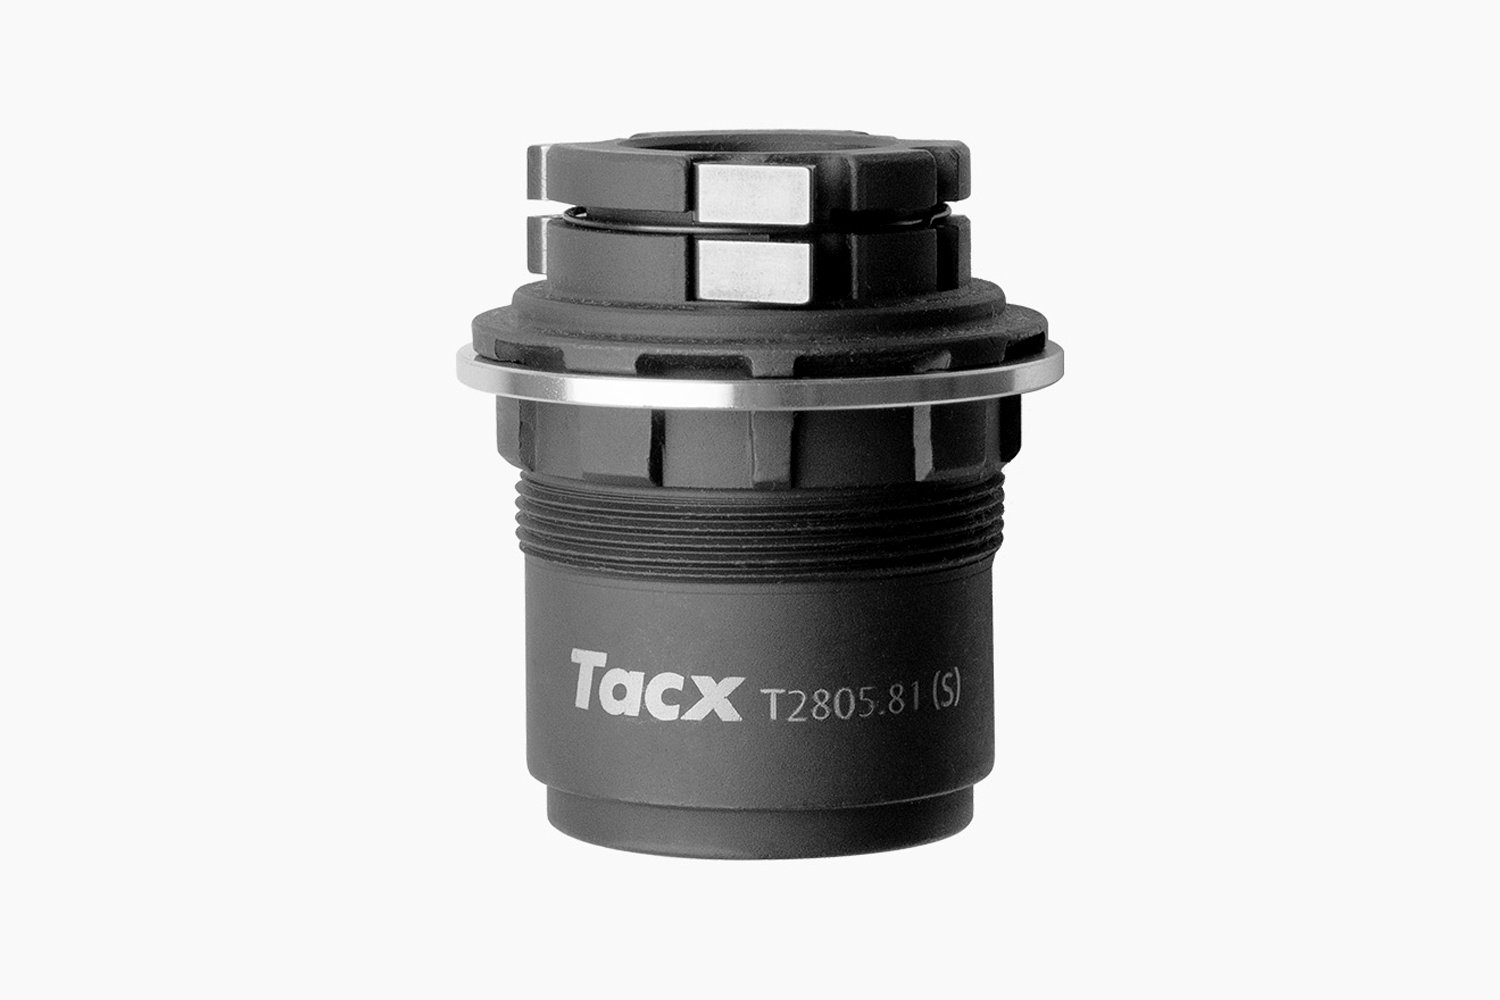 Барабан Tacx для кассеты SRAM XD-R, для Tacx, T2805.81